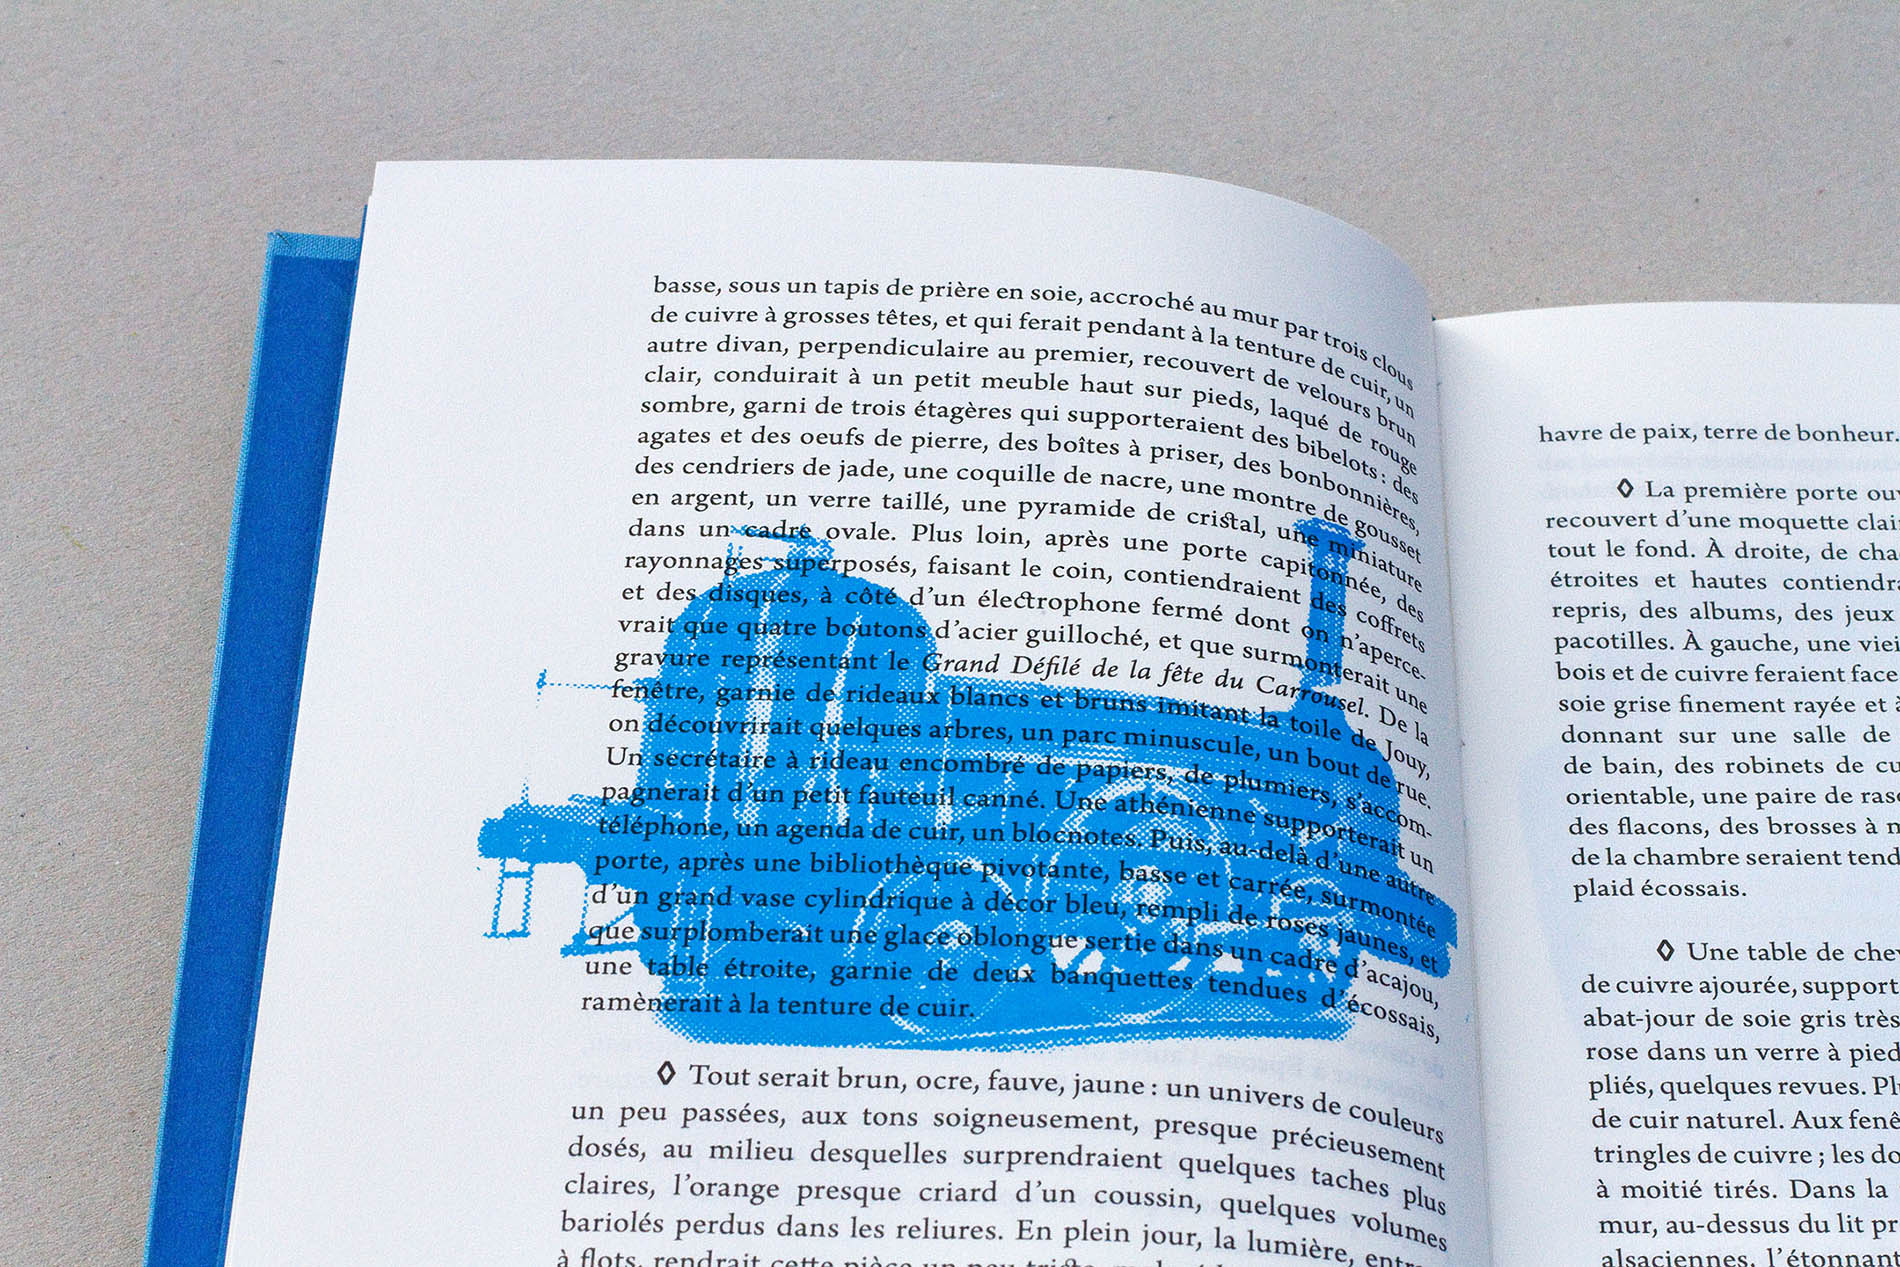 détail image sérigraphiée en bleu, édition Les choses de Georges Perec